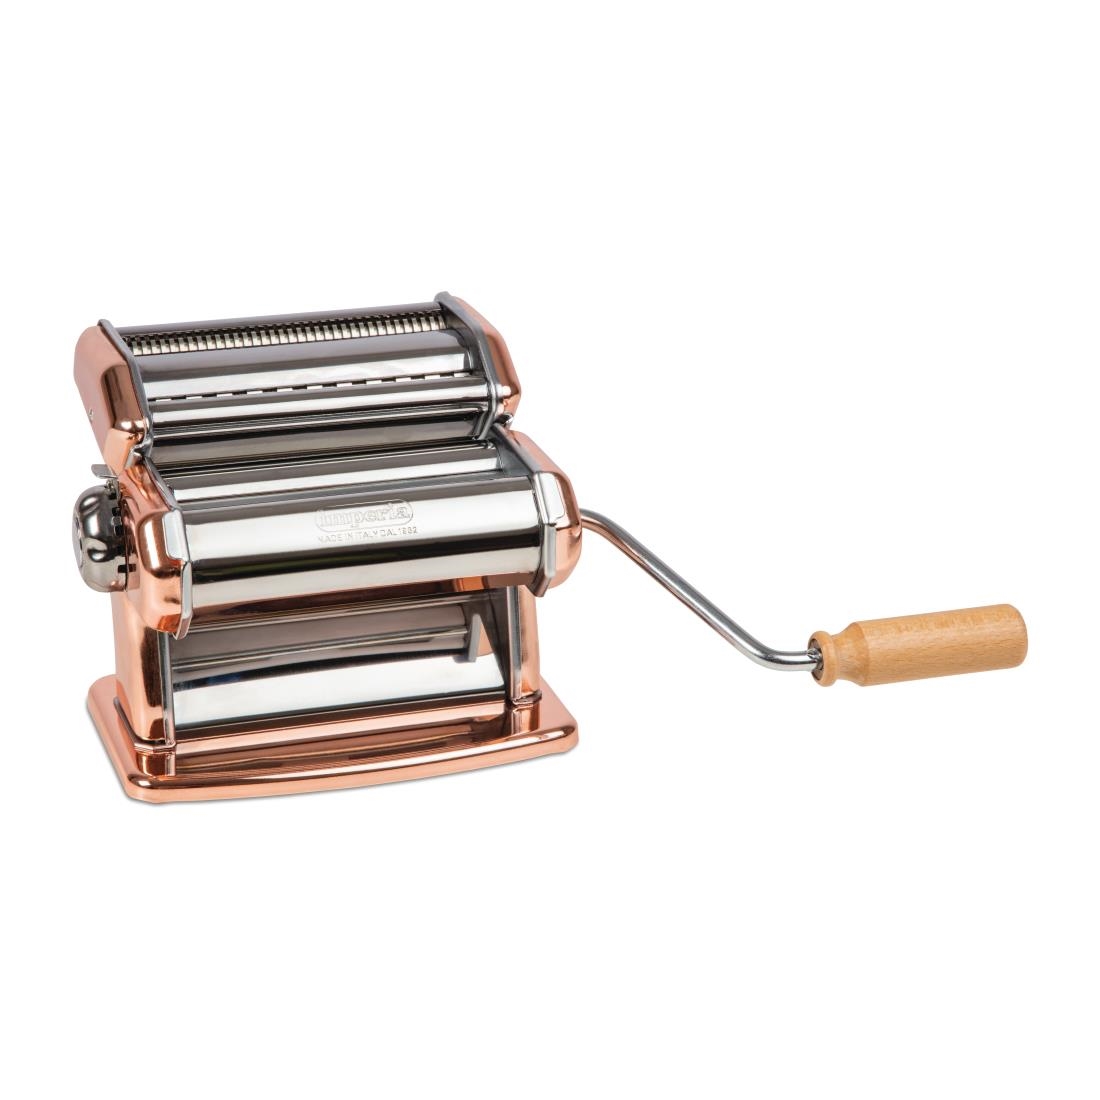 Imperial Manual Pasta Machine Copper